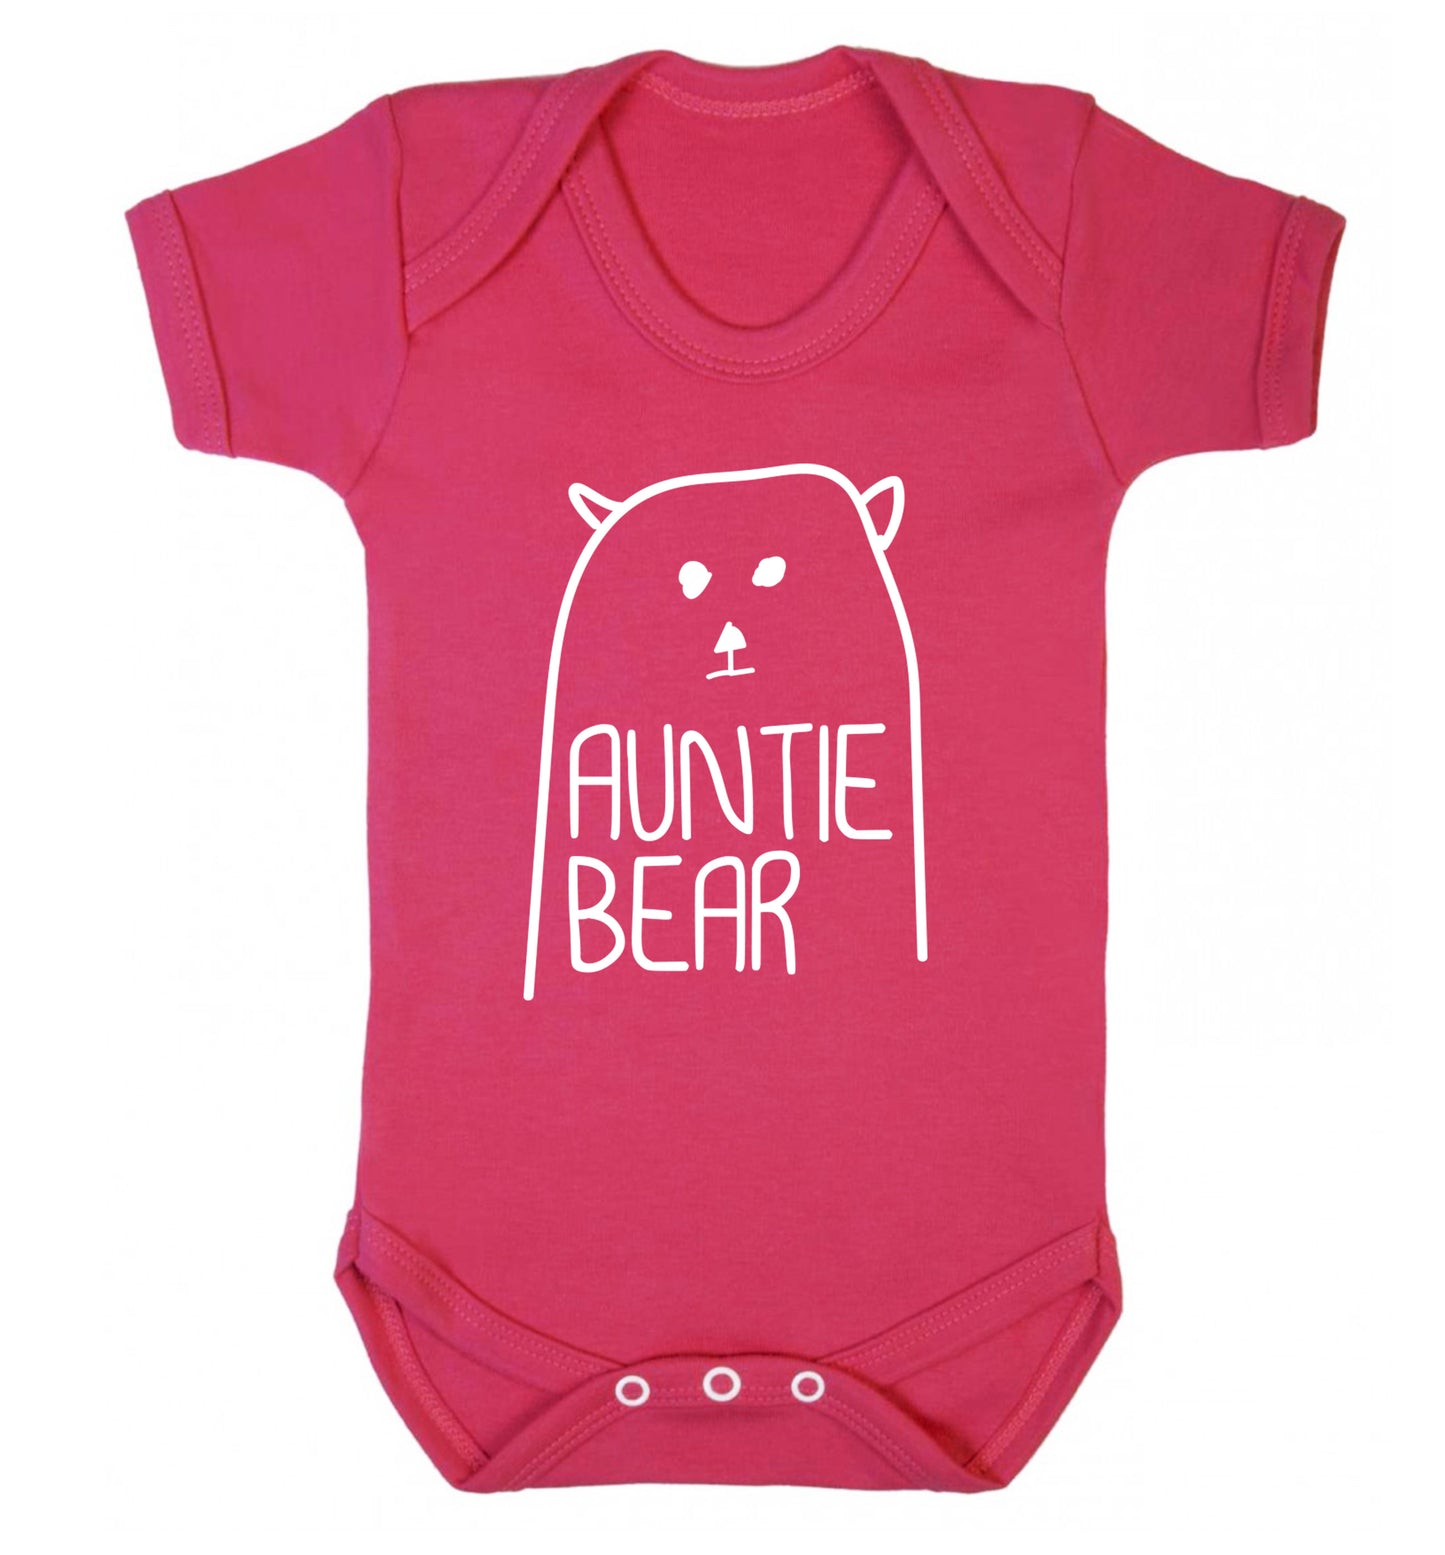 Auntie bear Baby Vest dark pink 18-24 months